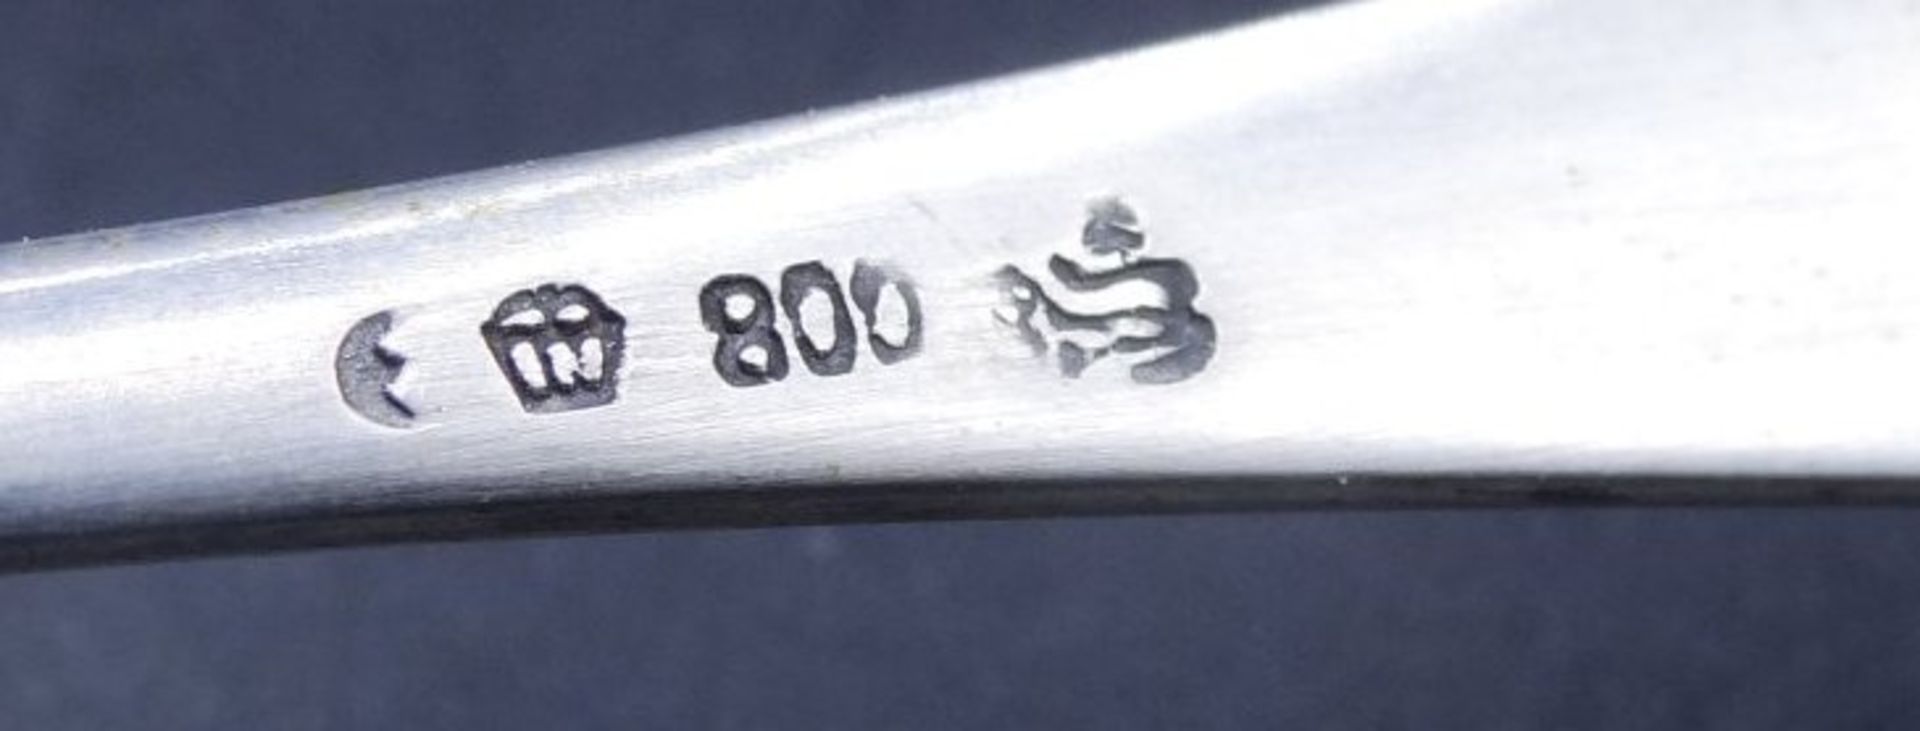 14x Teelöffel, Silber-800-, L-13 cm, 226 gr. in Kaste - Bild 5 aus 5